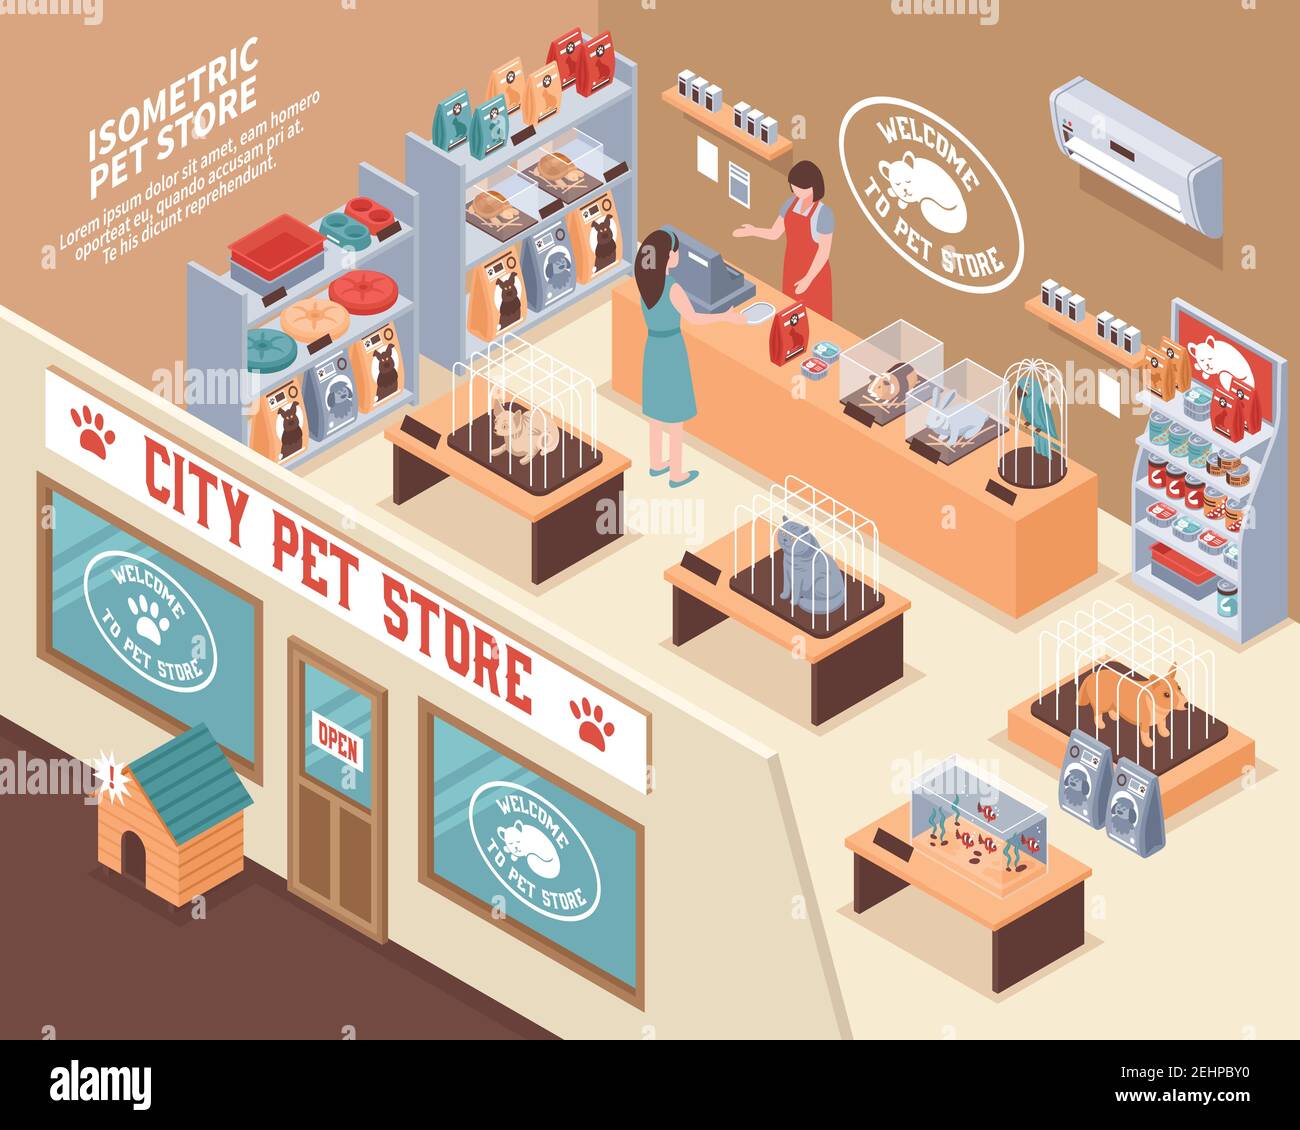 Composition de la boutique d'animaux en 3d isométrique colorée avec magasin d'animaux de la ville et illustration du vecteur visiteurs Illustration de Vecteur